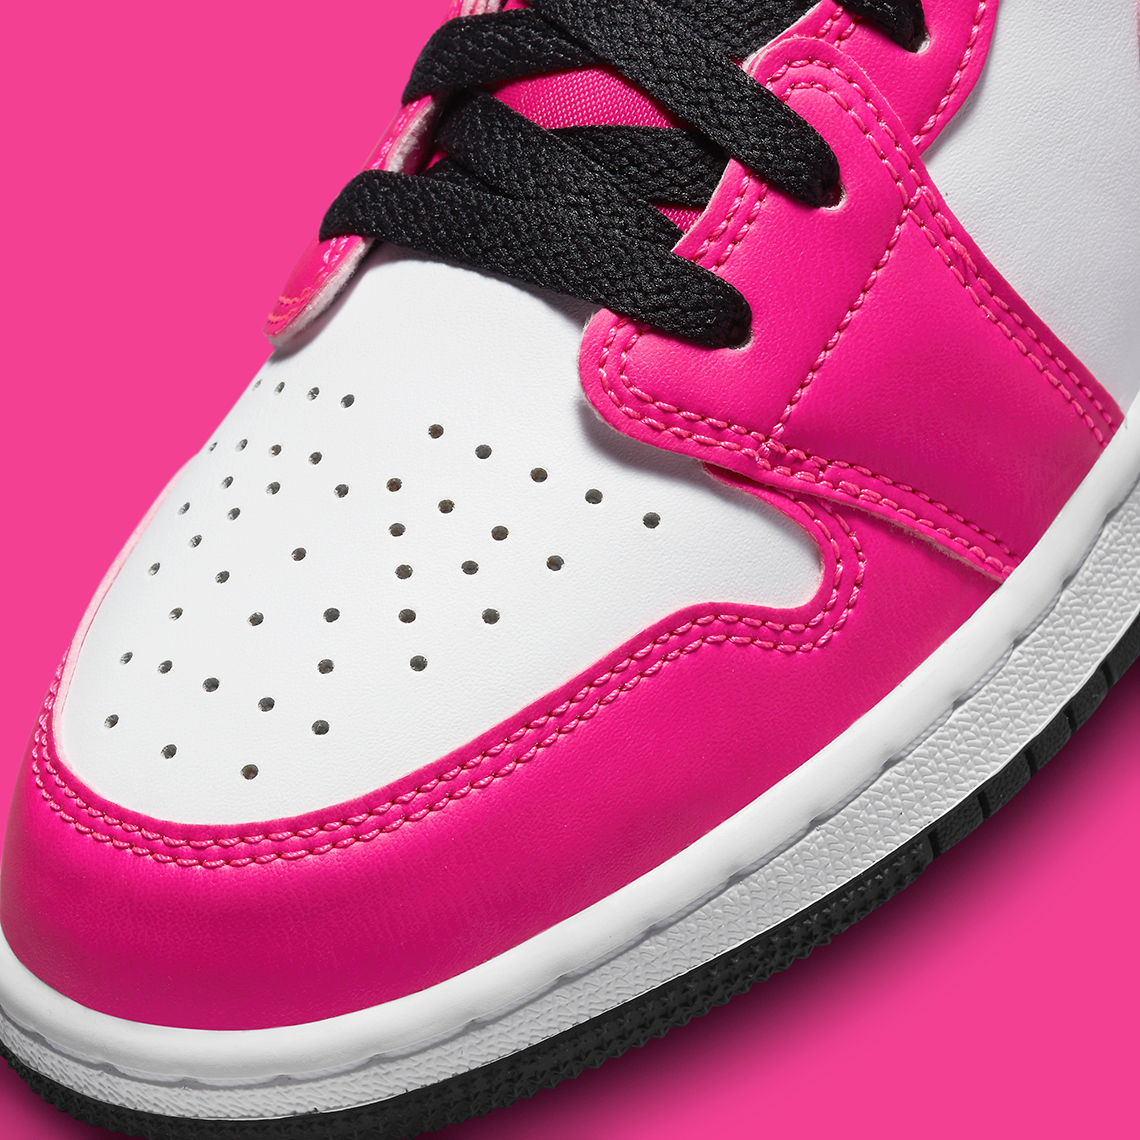 Air jordan 6 infrared шикарные мужские кроссовки джордан черные Low Kids Fierce Pink 7